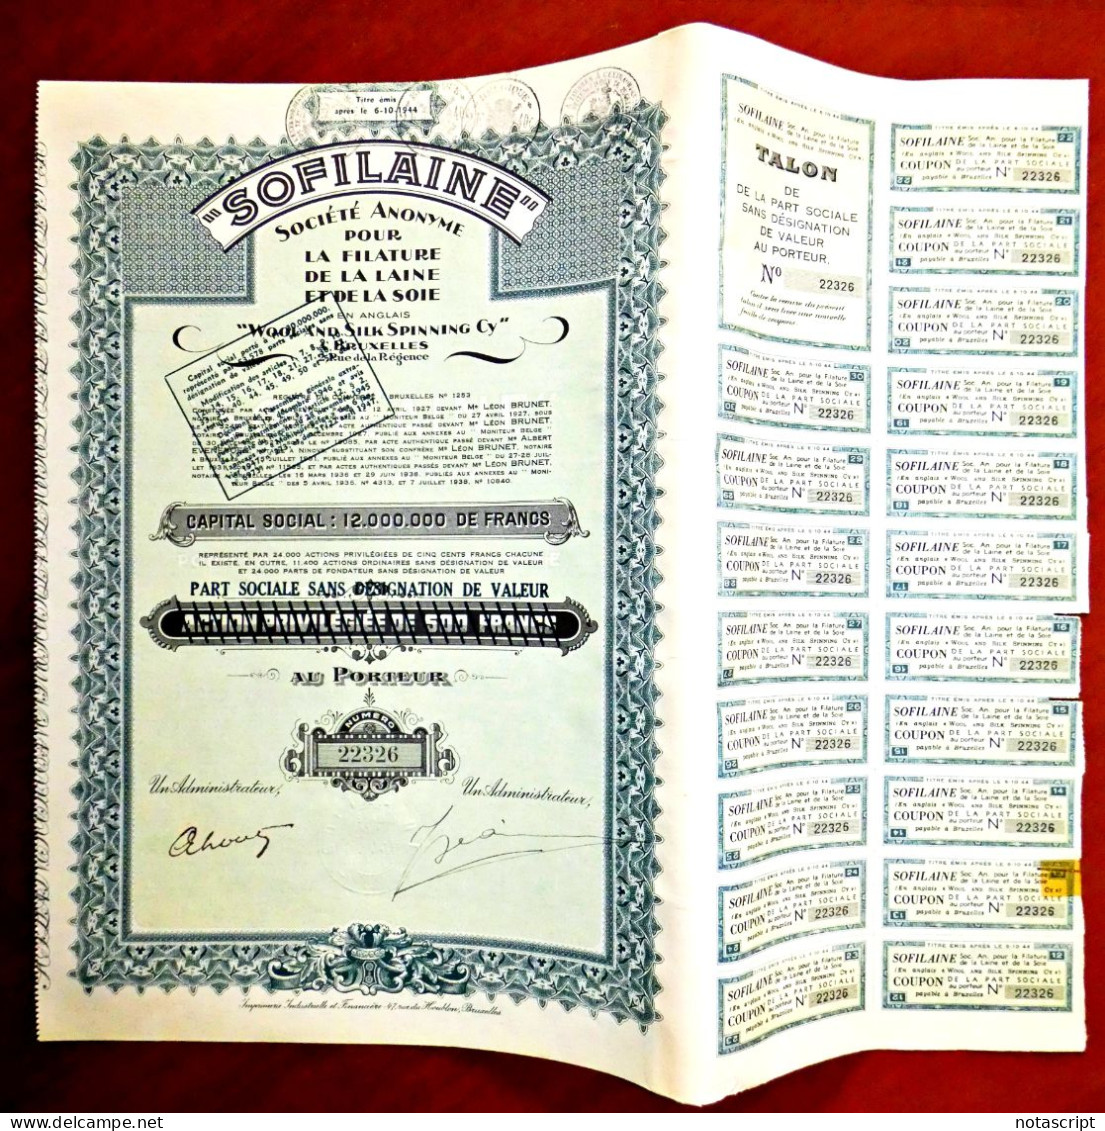 Sofilaine  ,wool & Silk Spinning 1938 Belgium Share Certificate - Tessili